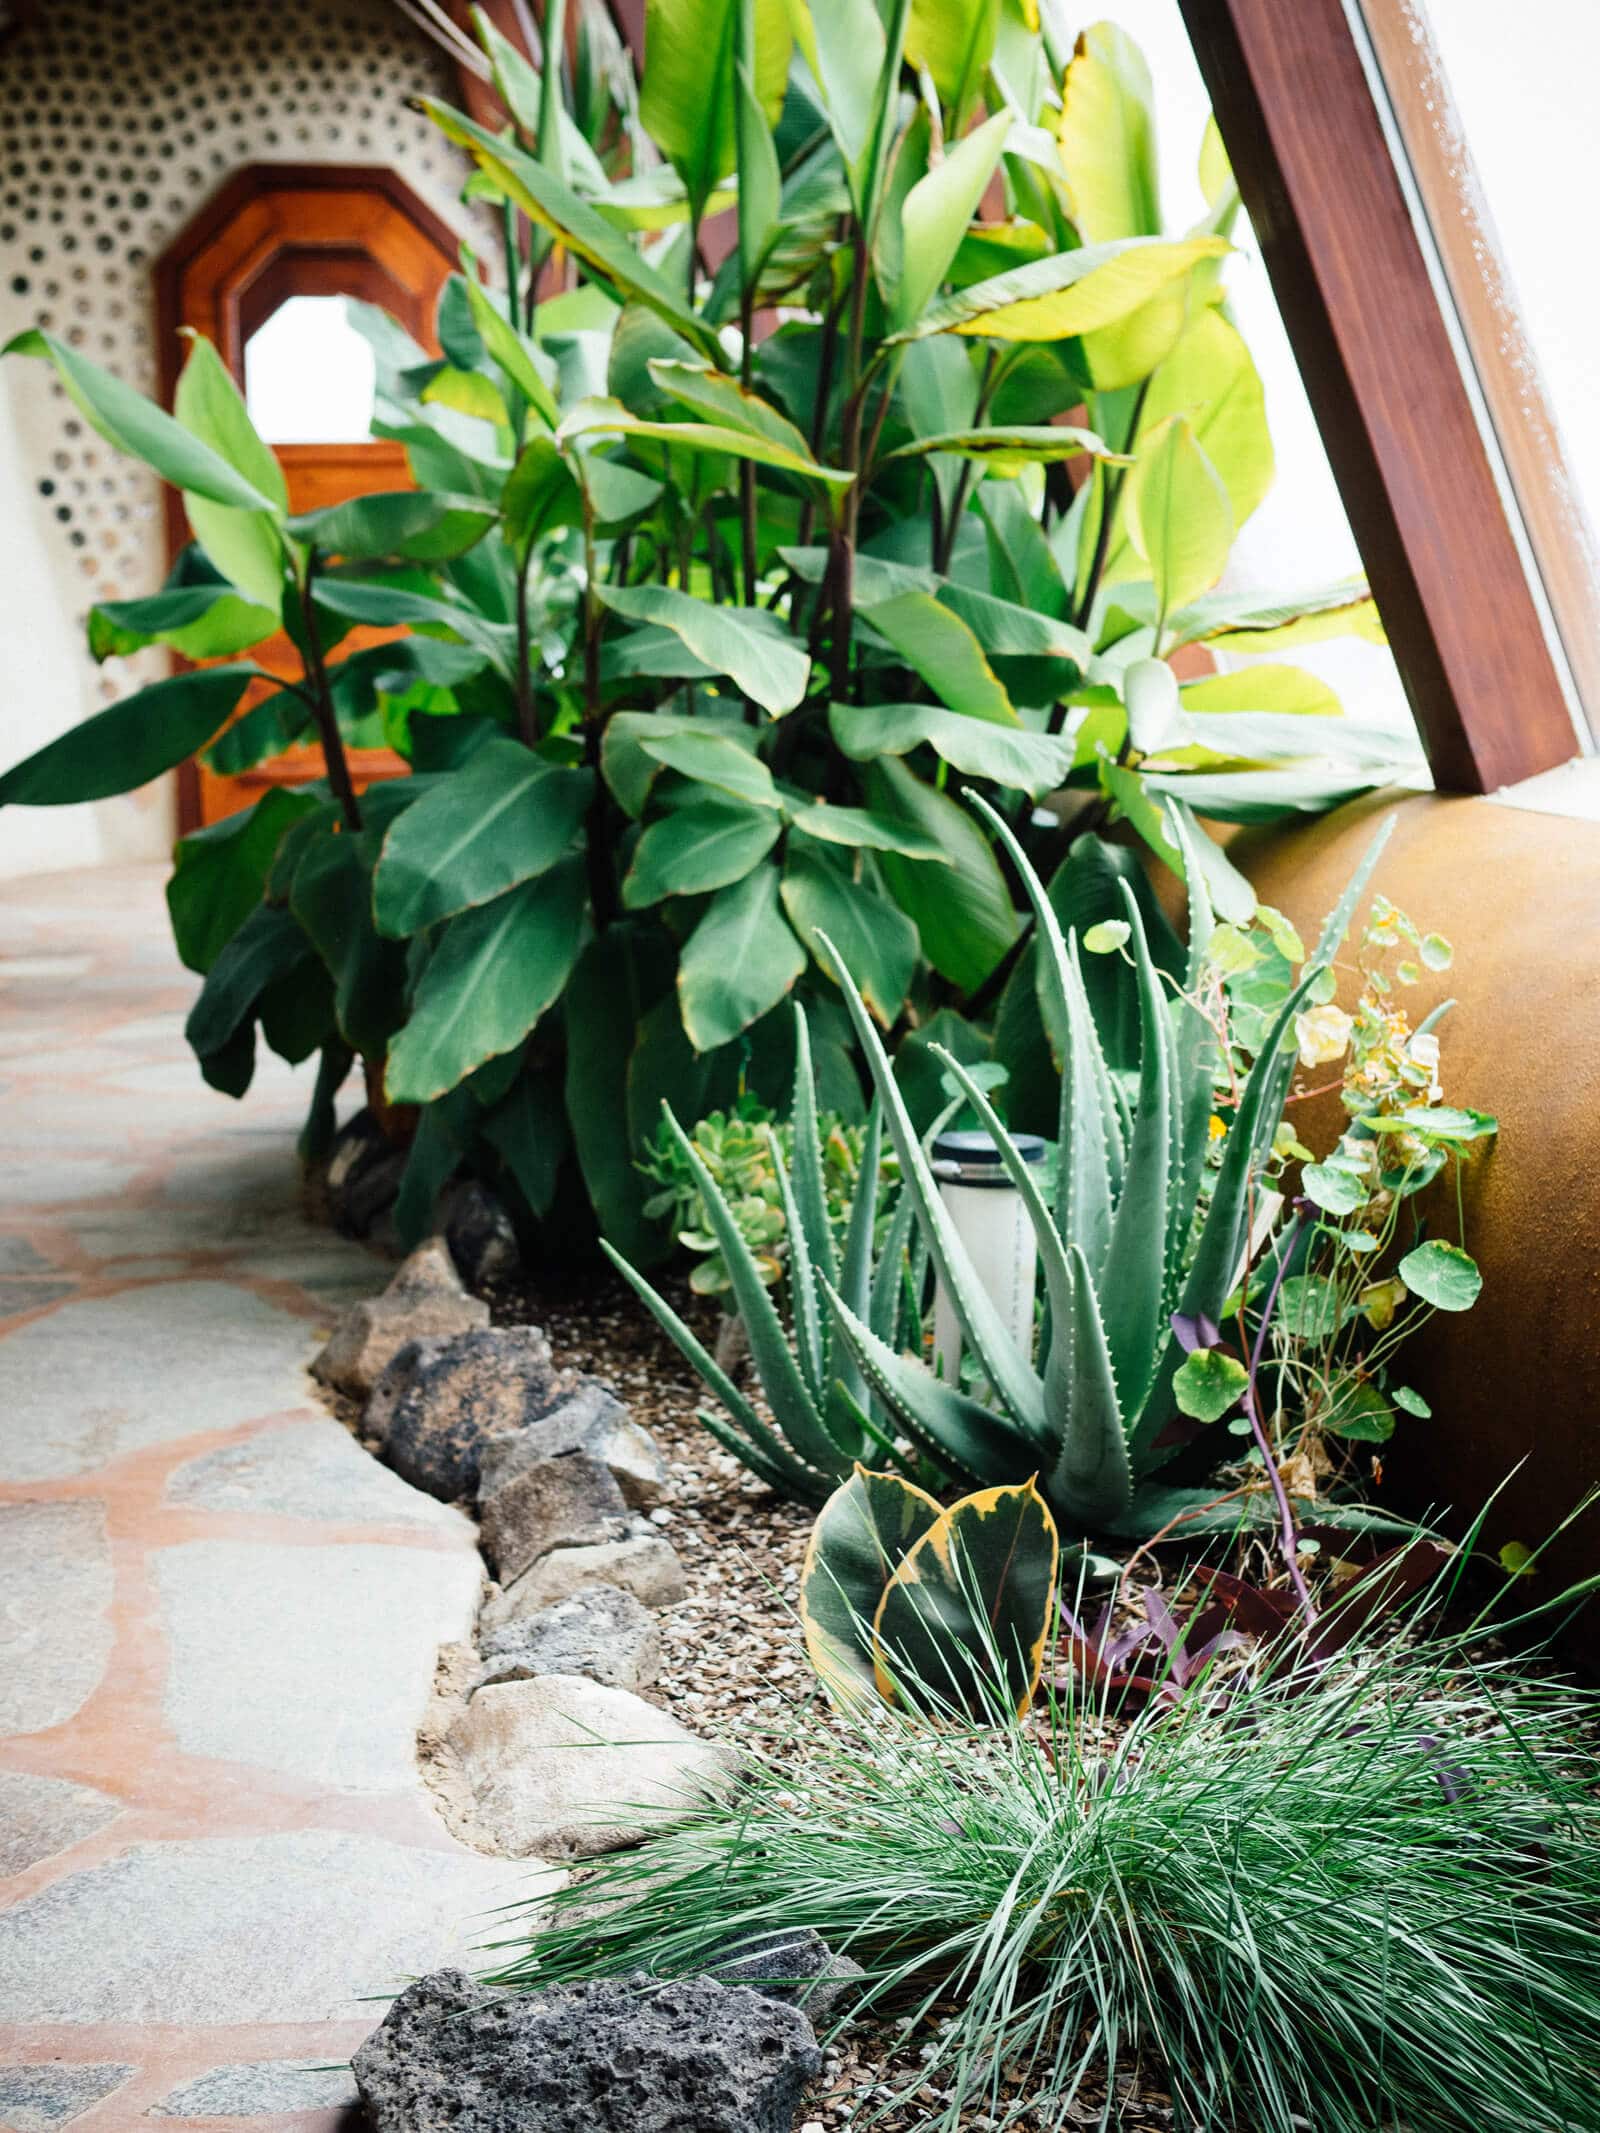 Ornamental plants in an Earthship greenhouse